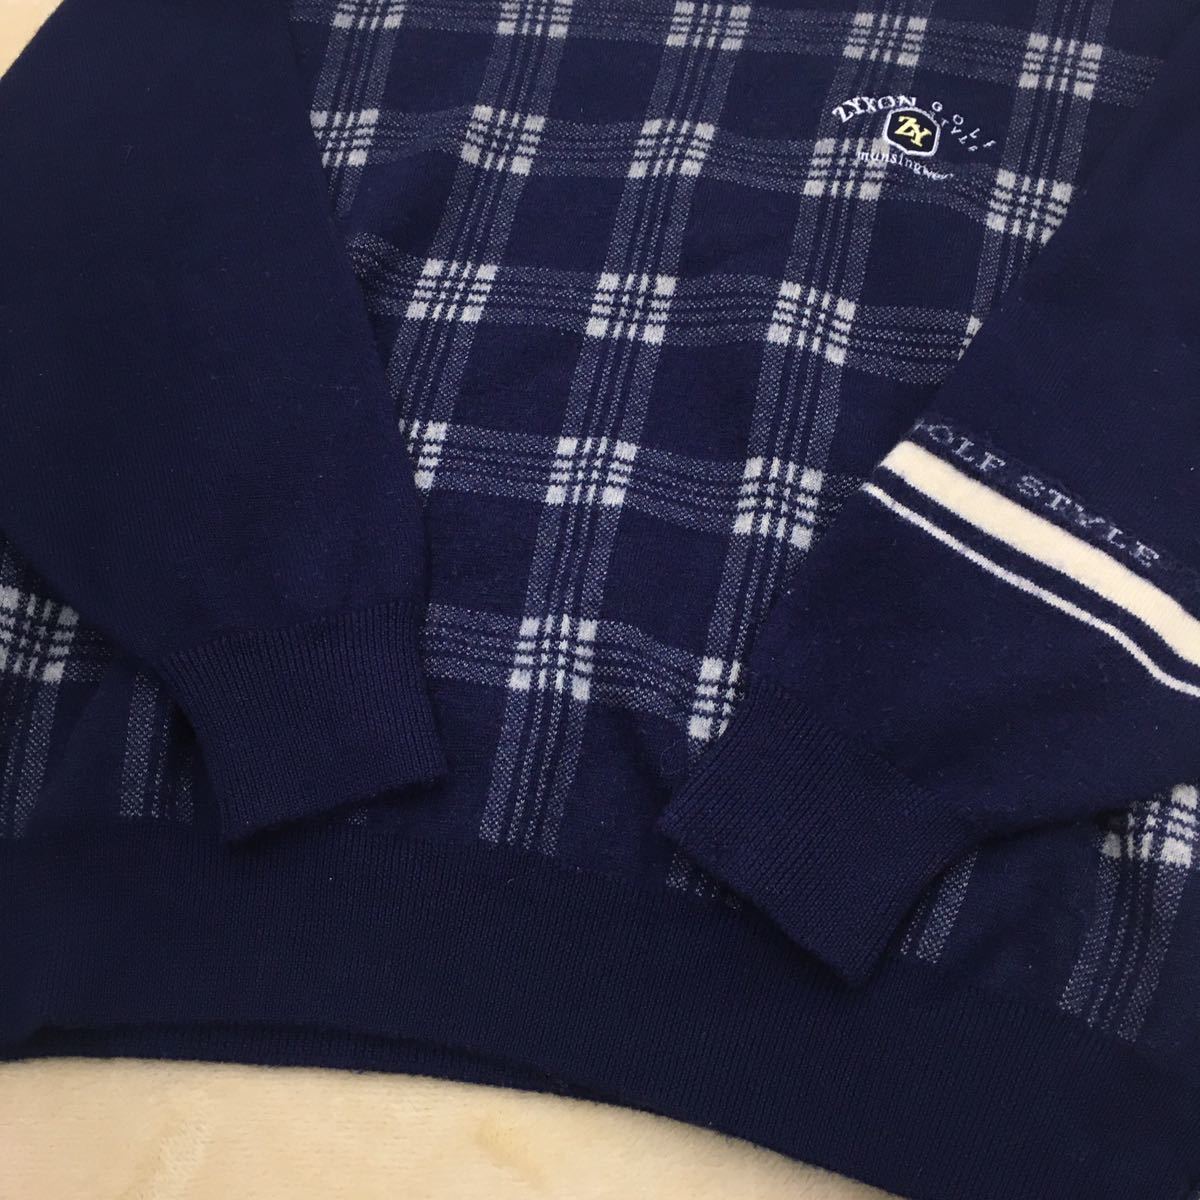 マンシングウェア ジグソン ゴルフスタイル スポーツウェア ニットセーター 切替デザイン チェック ウール メンズ サイズLL 紺色 デサント